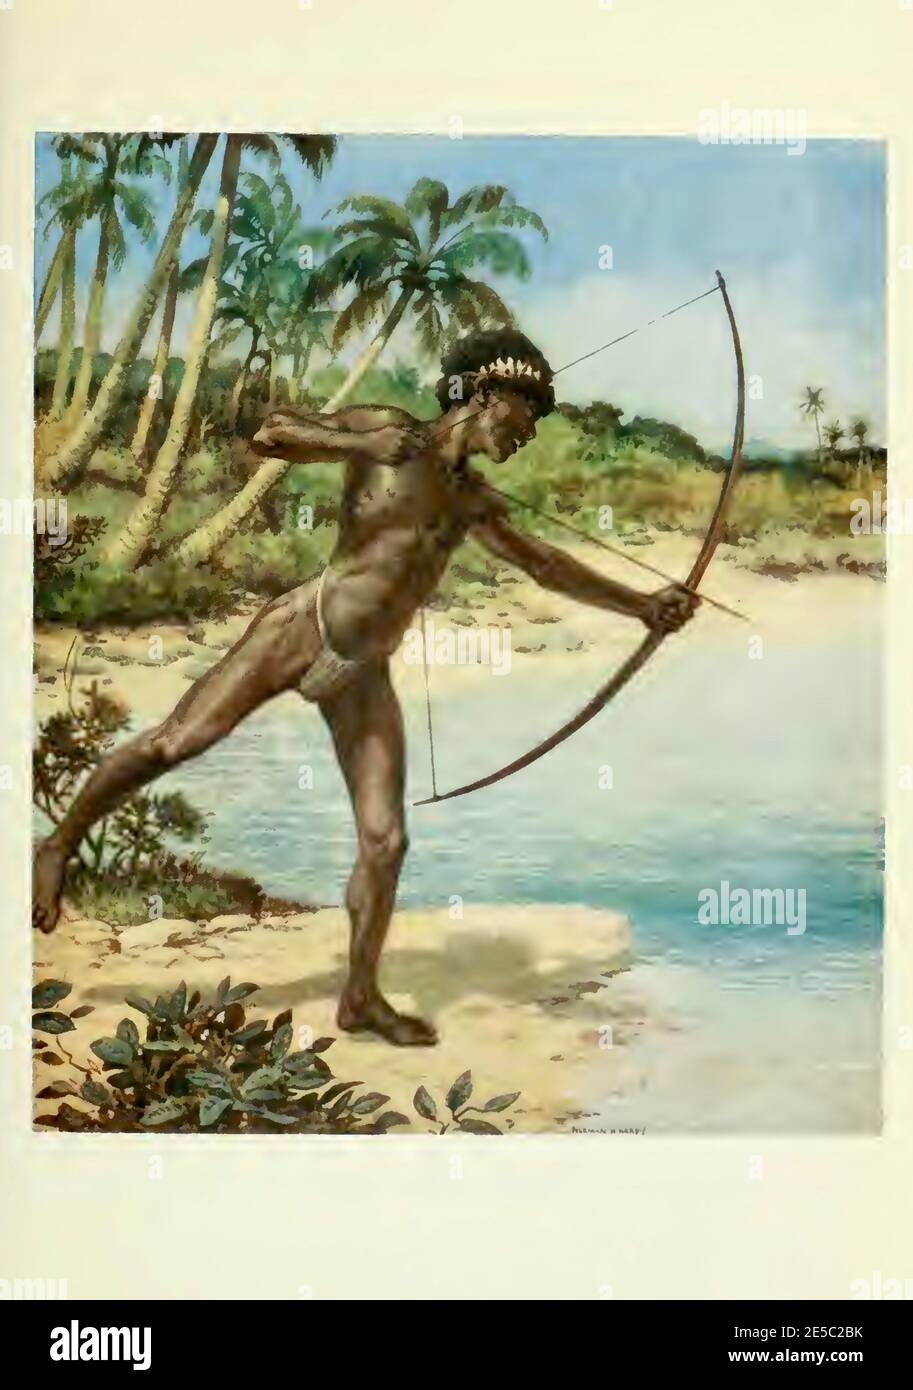 Archer, originaire des îles Soloman, se dresse au bord de l'eau, attendant de tirer des poissons. Norman Hardy peinture du début des années 1900. Banque D'Images